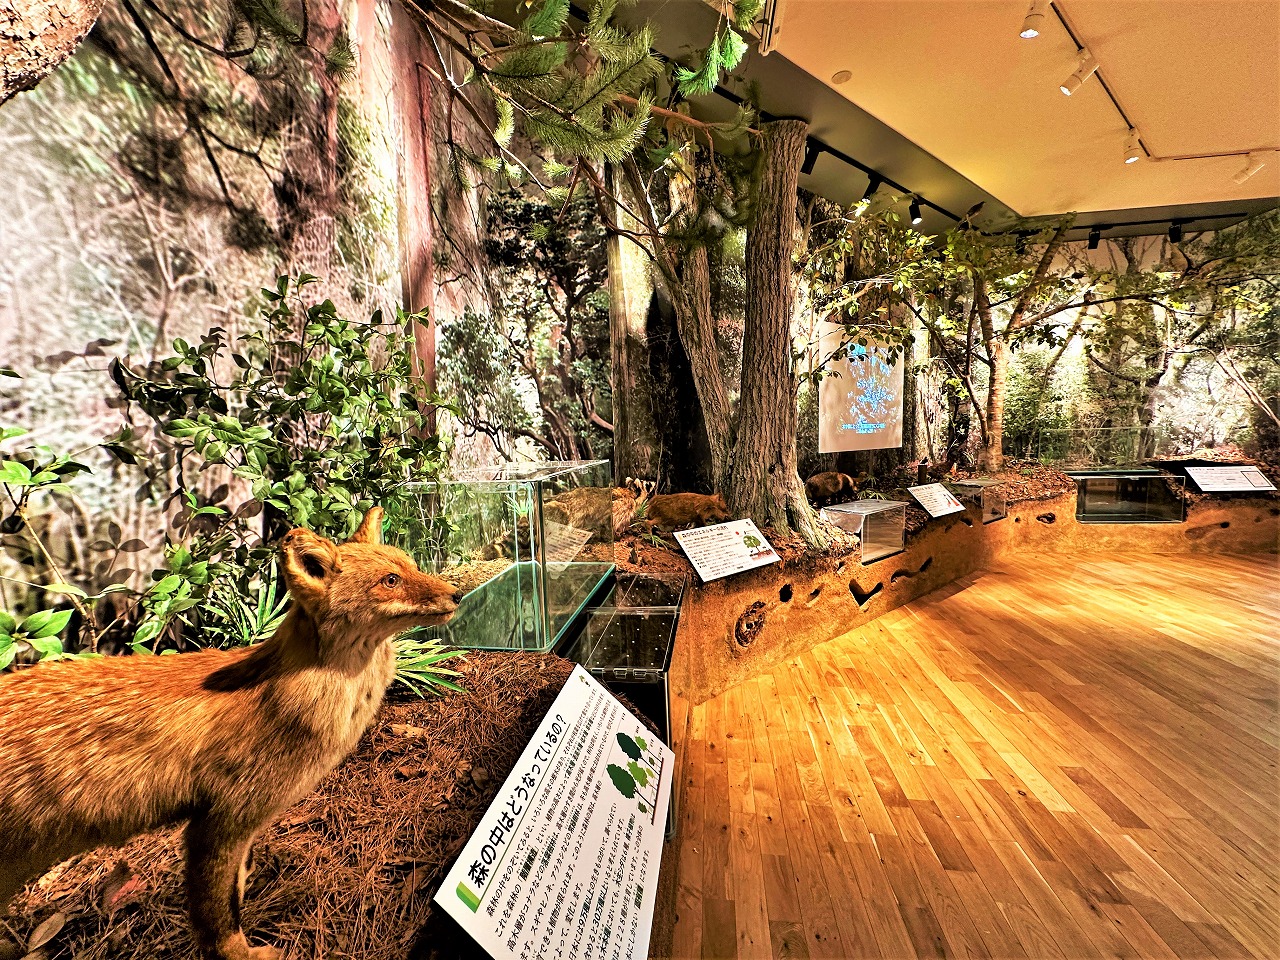 森林展示館展示スペースのリニューアルについて – 神戸市立森林植物園